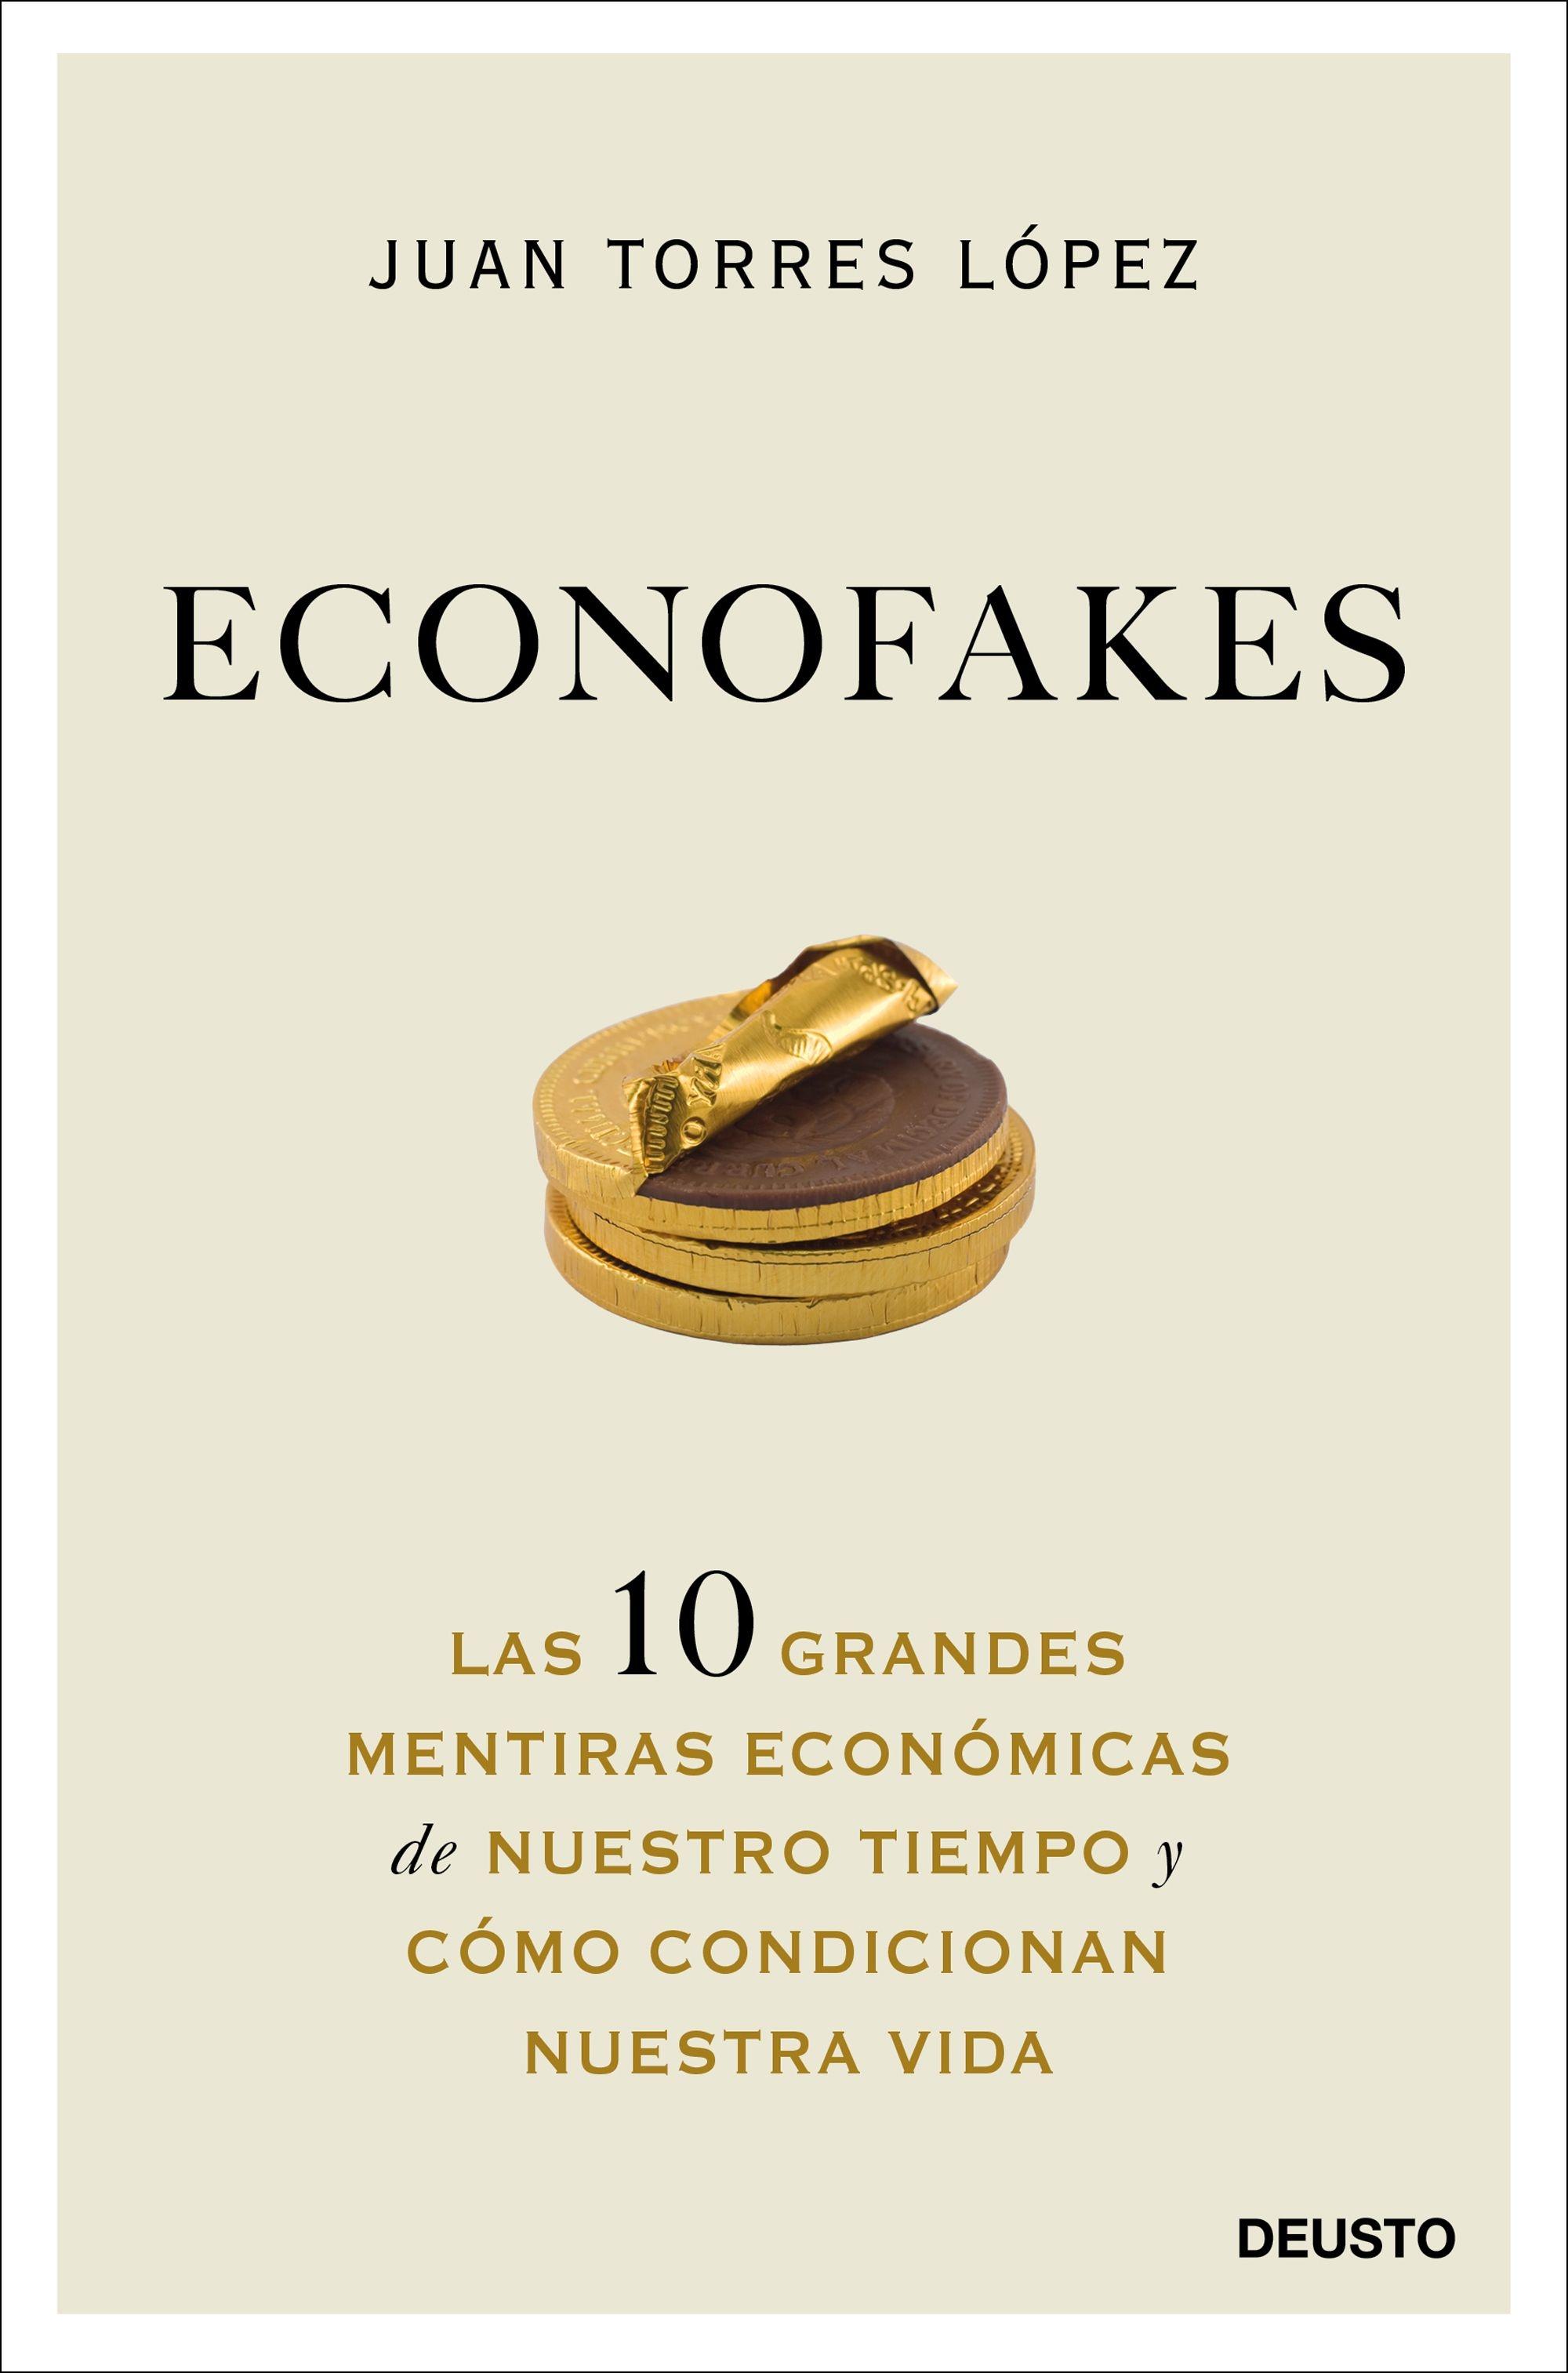 Econofakes "Las 10 Grandes Mentiras Económicas de nuestro Tiempo y Cómo Condicionan". 